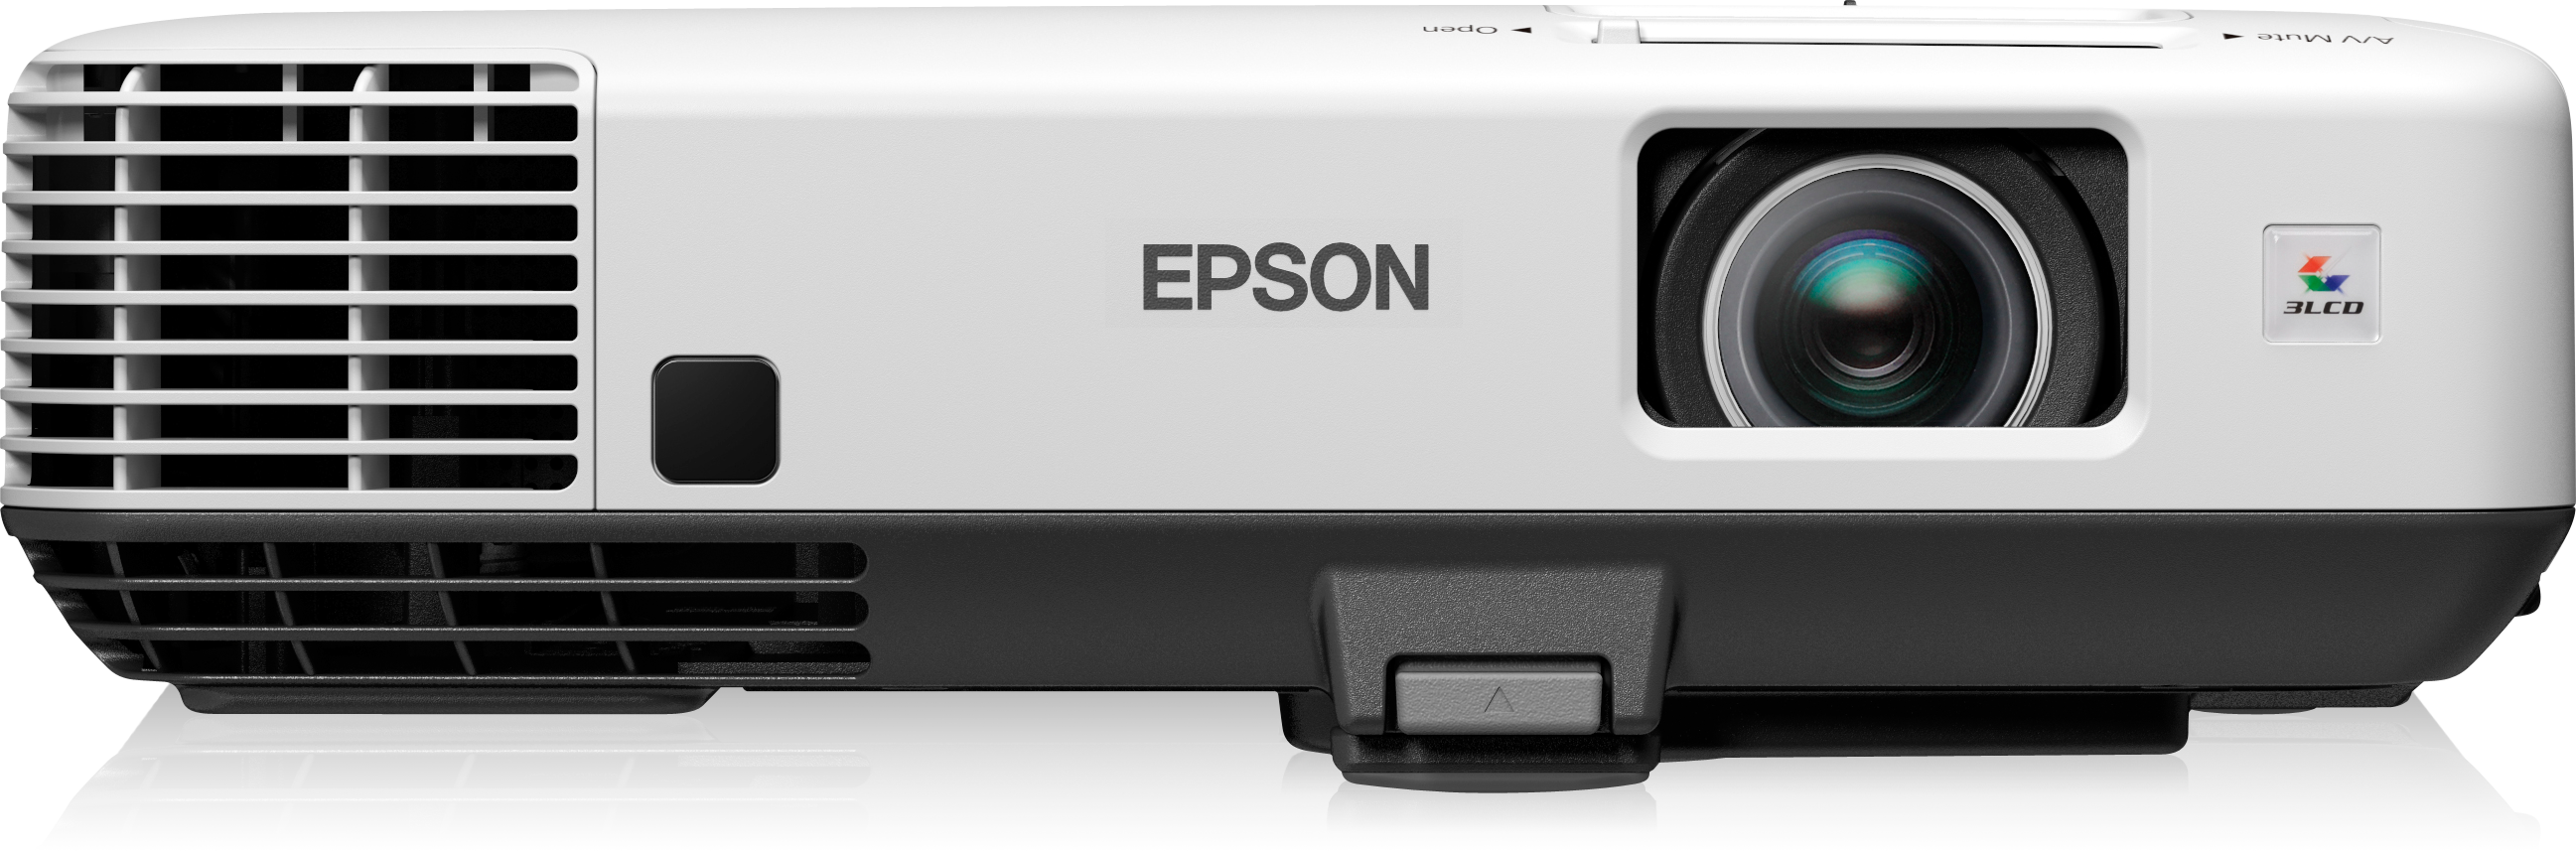 epson-eb-1880-installationsprojektoren-projektoren-produkte